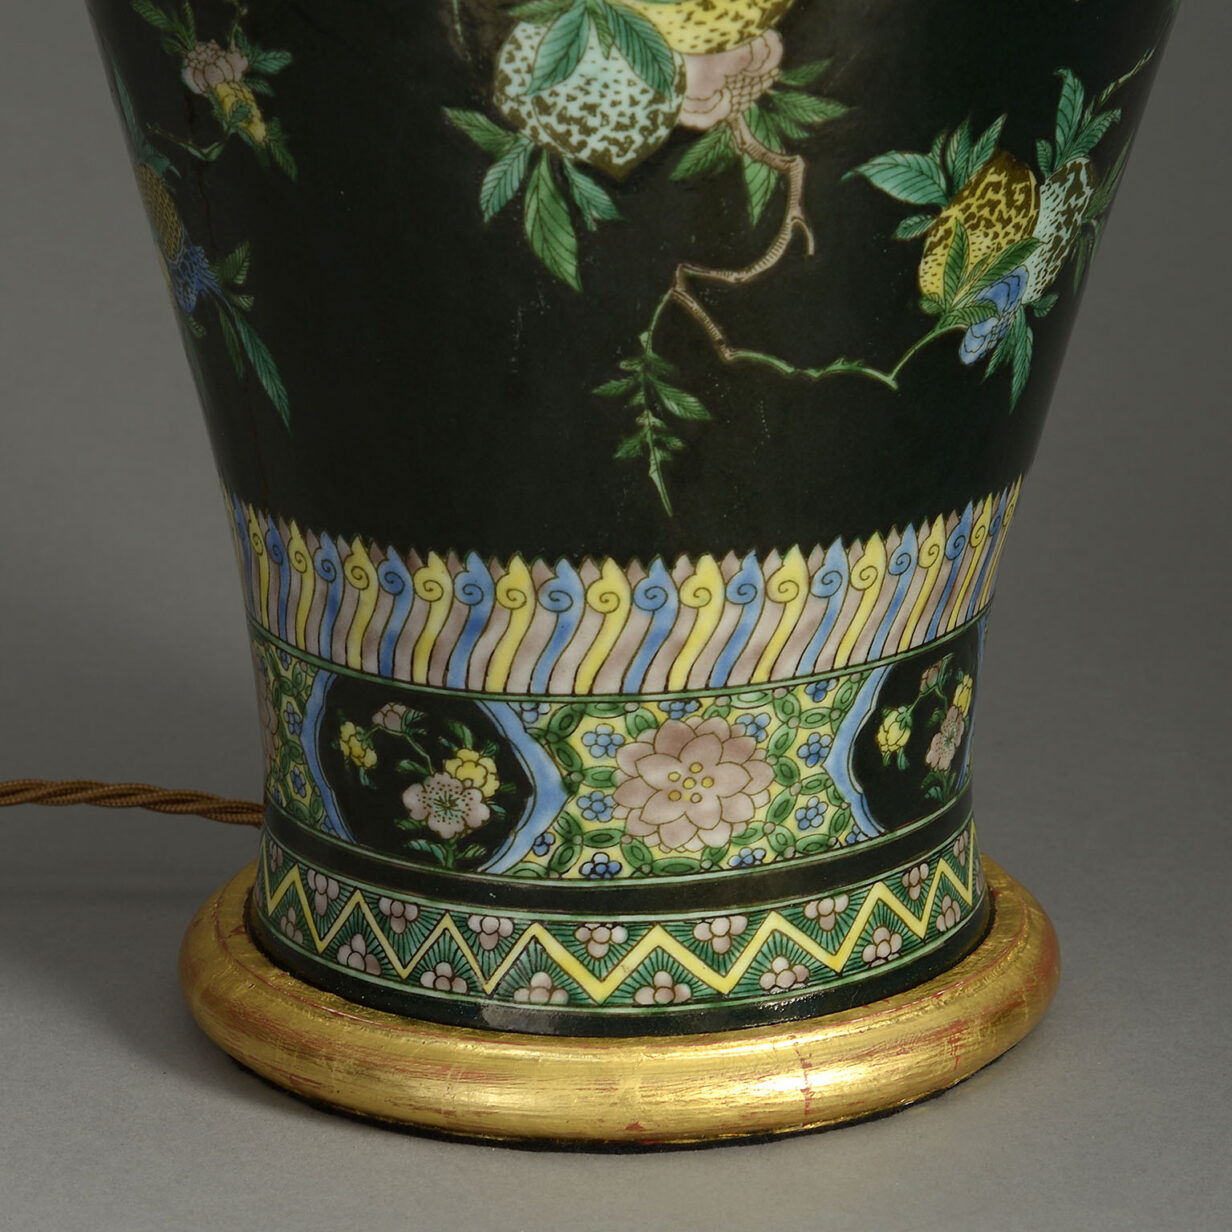 Famille noire porcelain vase lamp